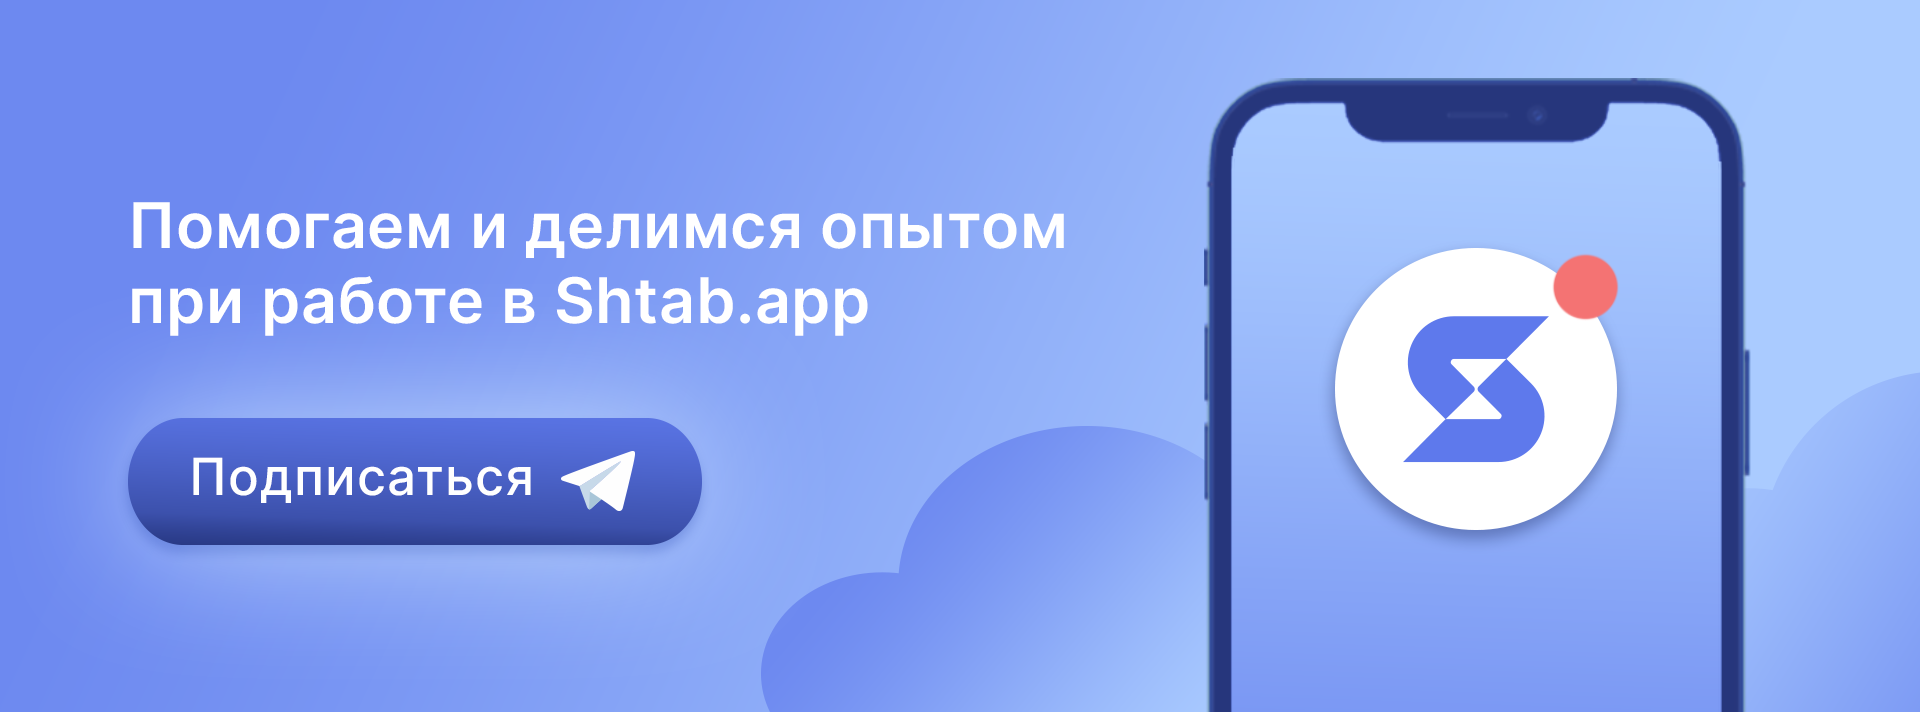 Сервис для управления проектам Shtab в Telegram